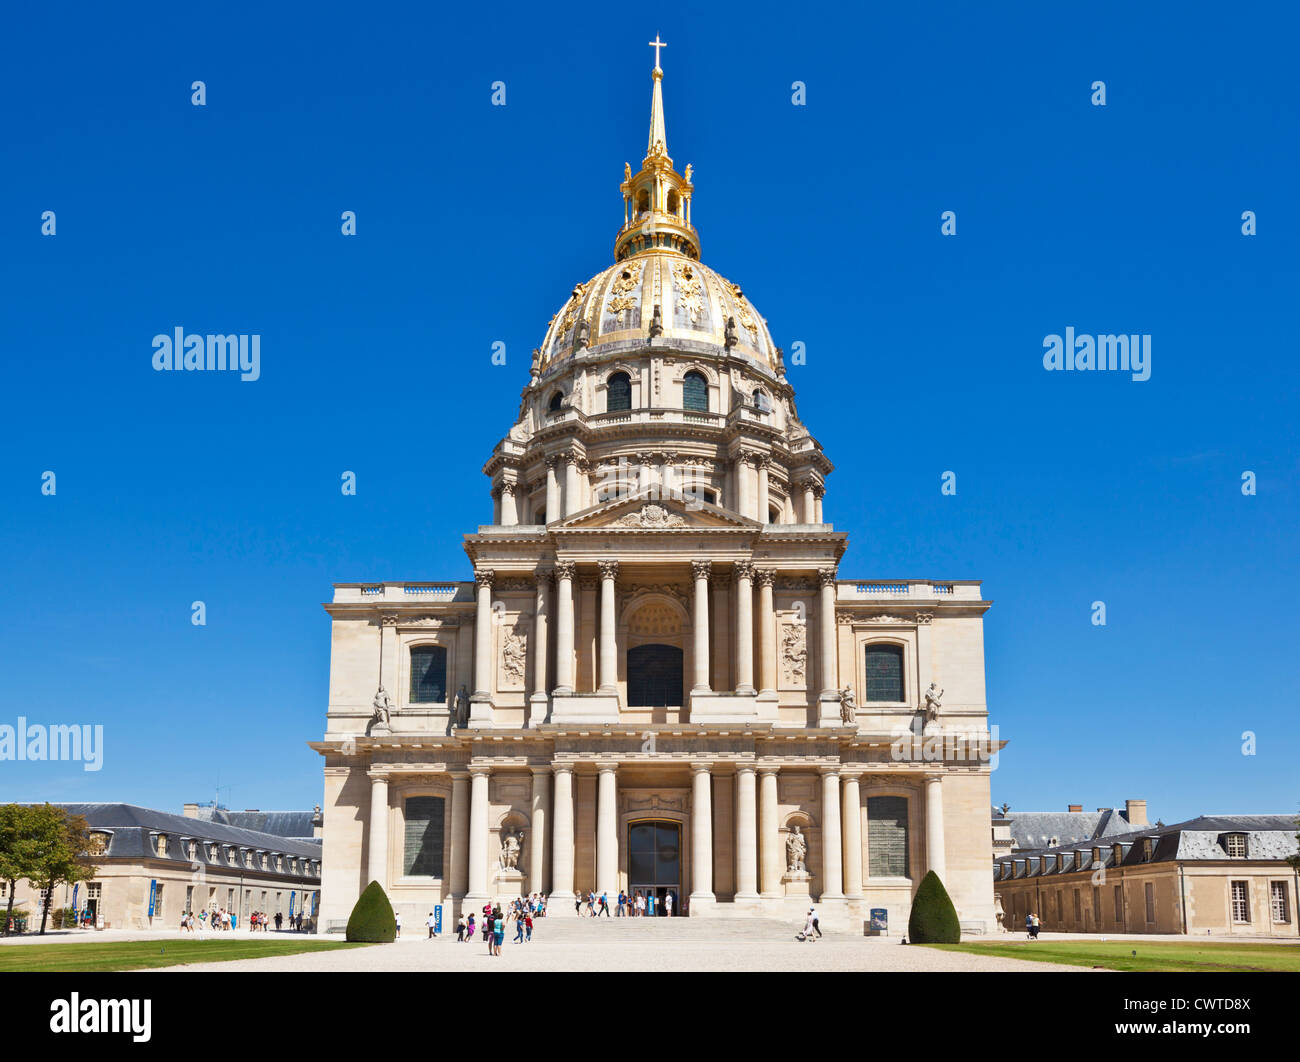 Eglise du Dome des Invalides tombeau de Napoléon Paris France Europe de l'UE Banque D'Images